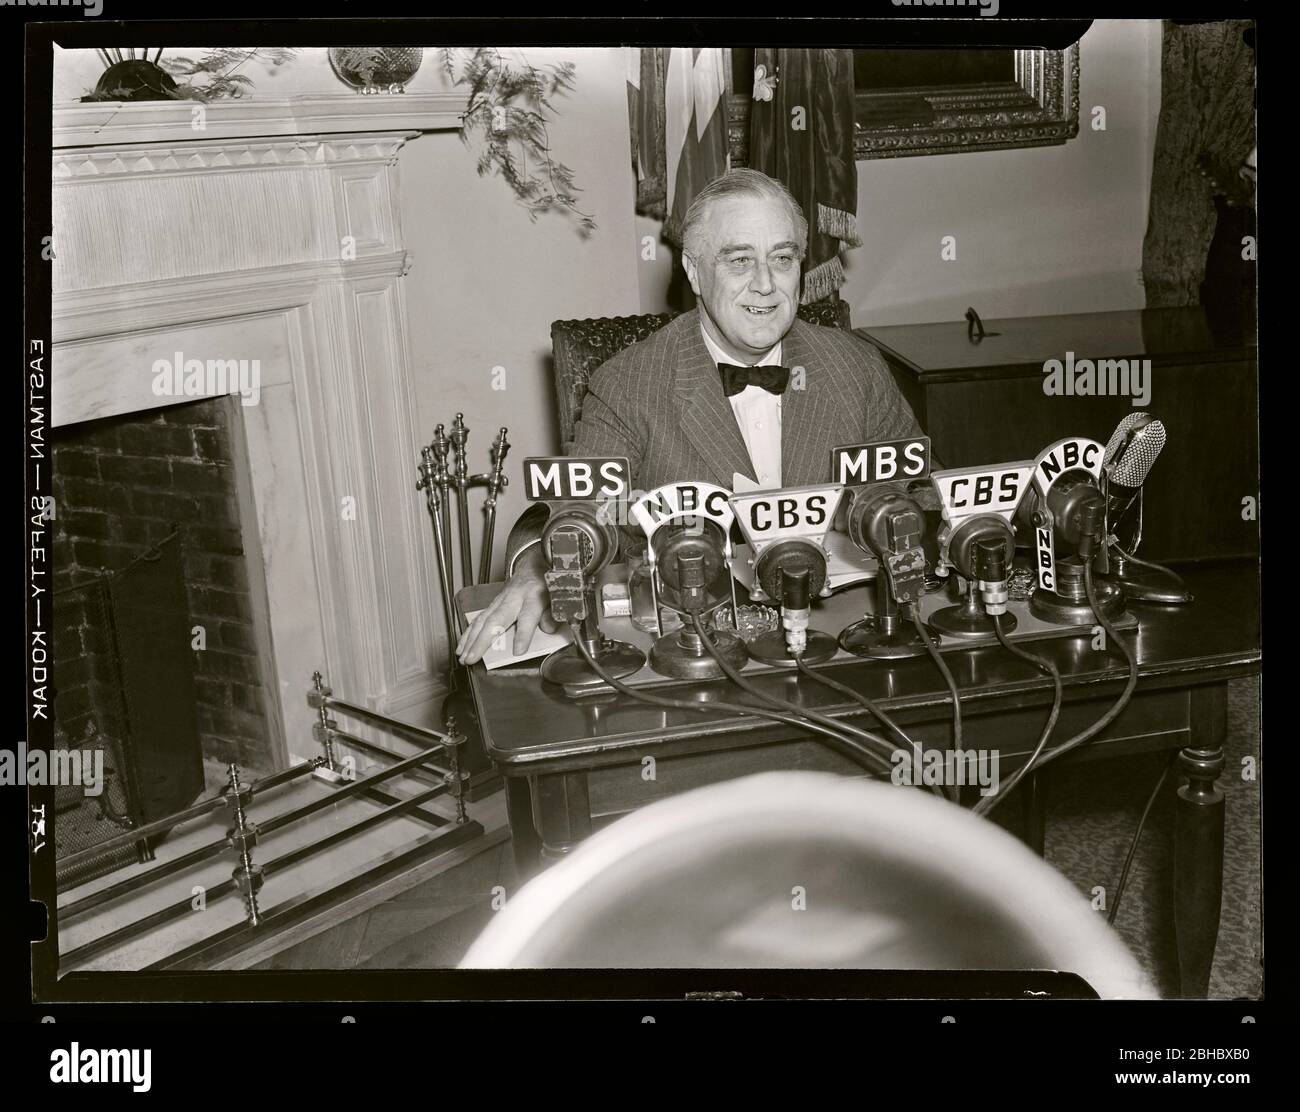 Präsident Franklin D. Roosevelt "FDR" lächelt, bevor er zwei Tage nach dem Angriff auf Pearl Harbor, 1941, eine Radioadresse gibt. Bild von 4x5 Zoll Negativ. Stockfoto